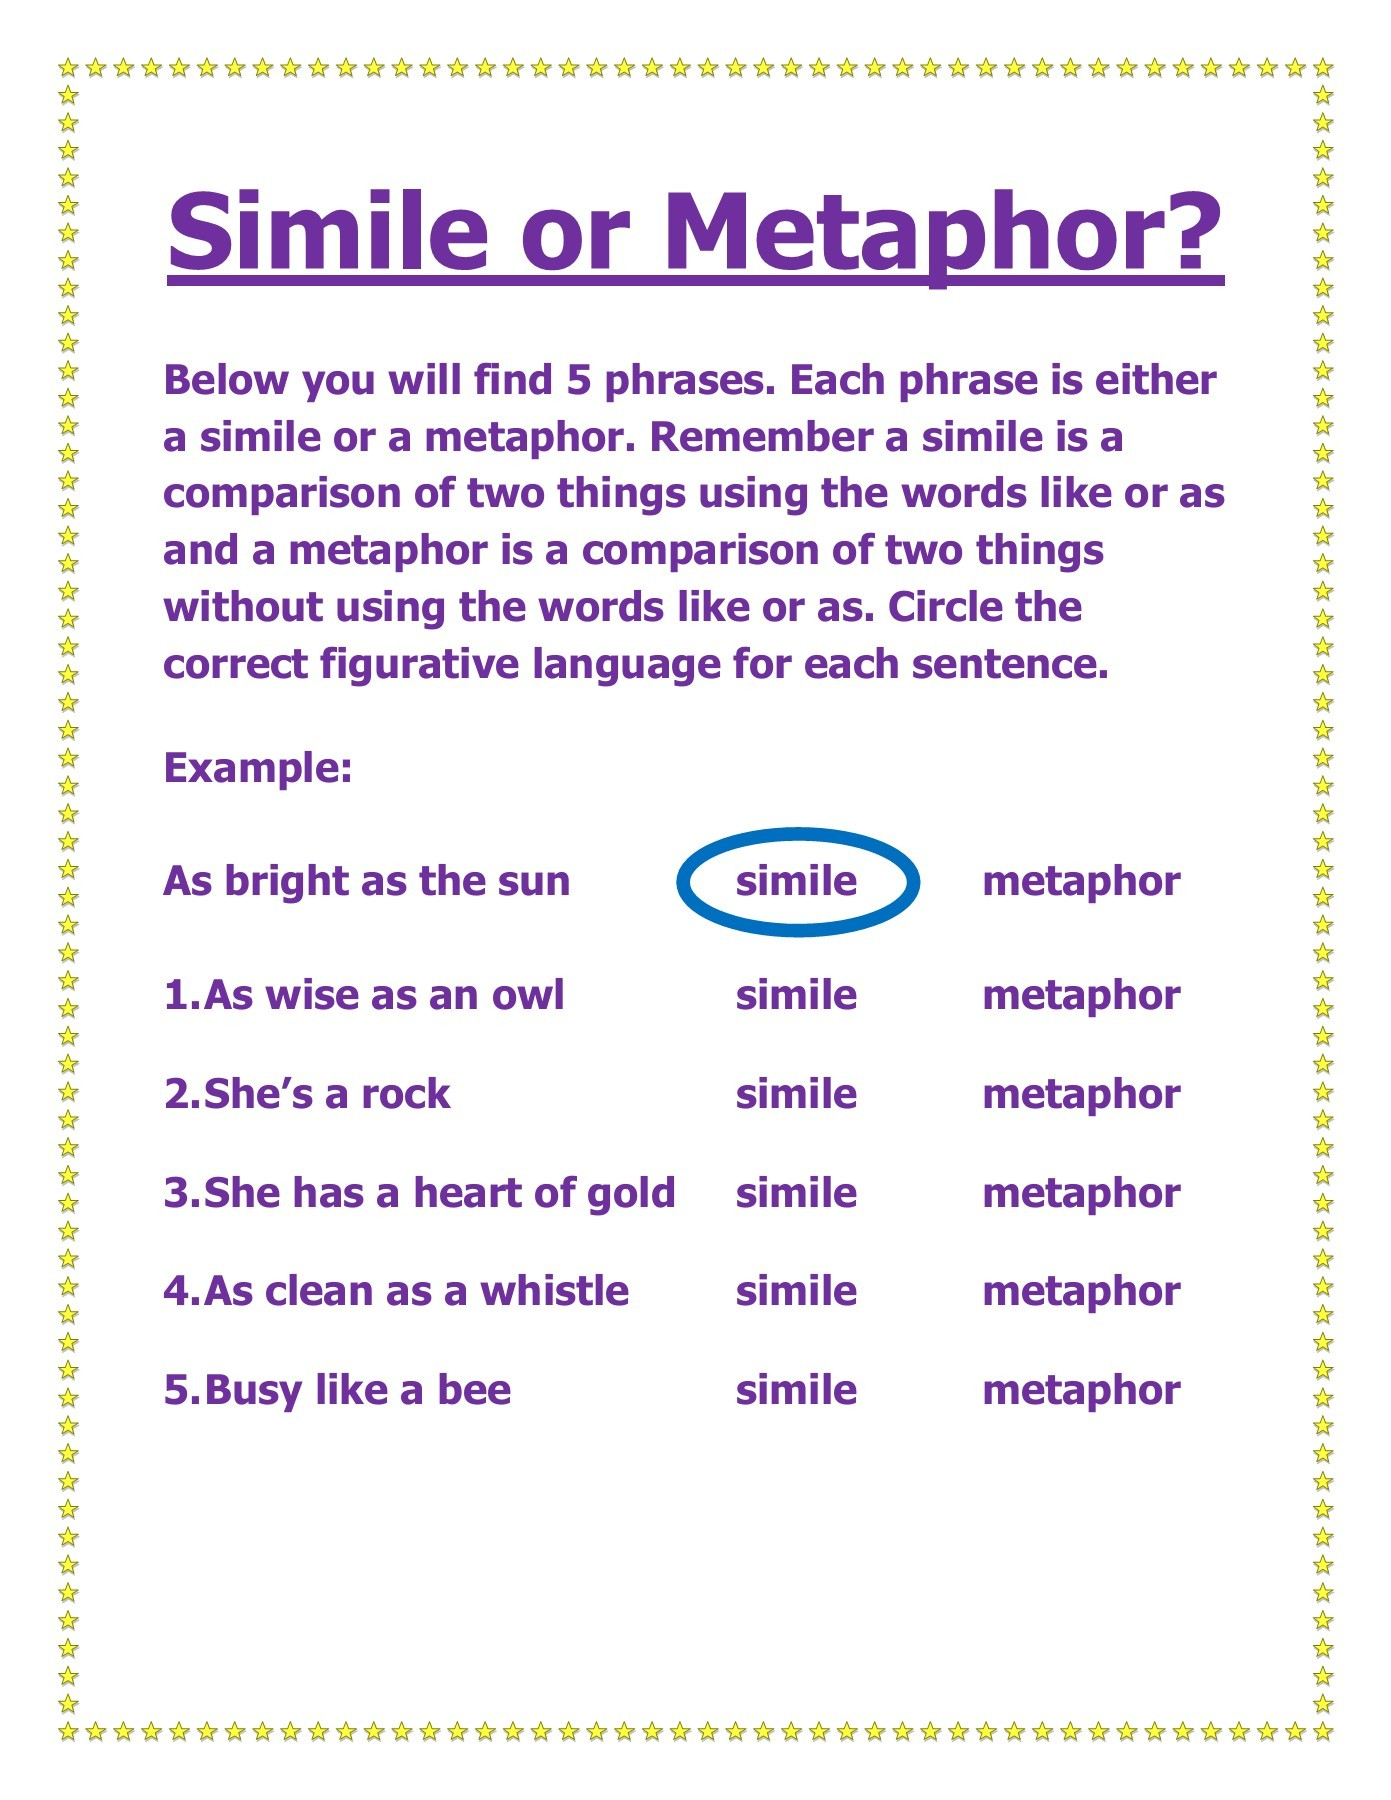 Metaphor Sentence Examples Metaphor Examples